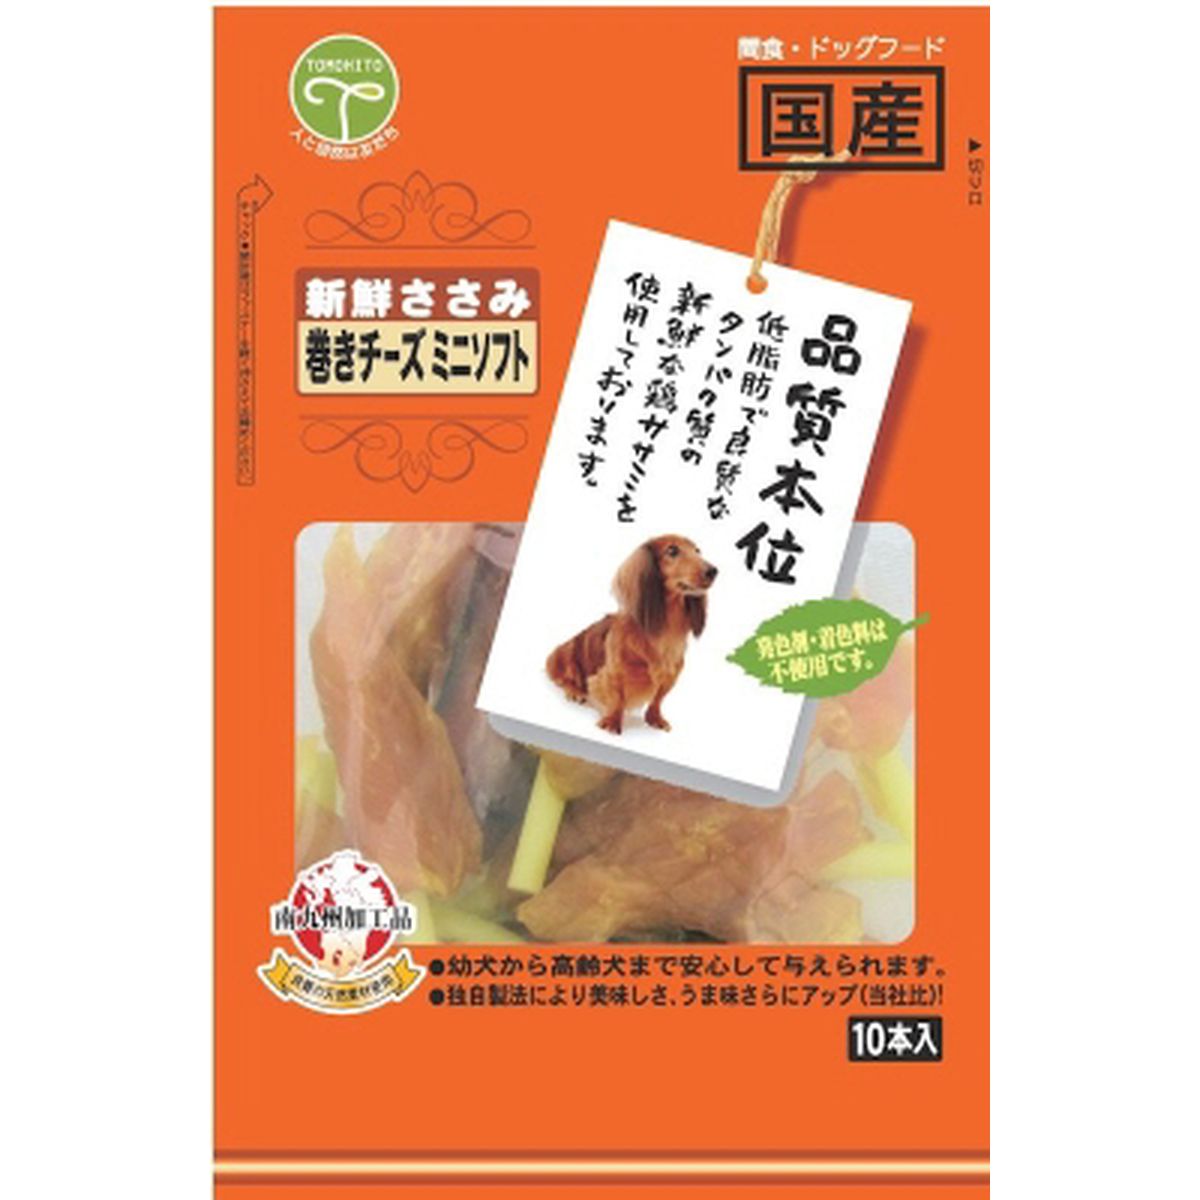 新鮮ササミ 巻キチーズミニソフト 10本×50